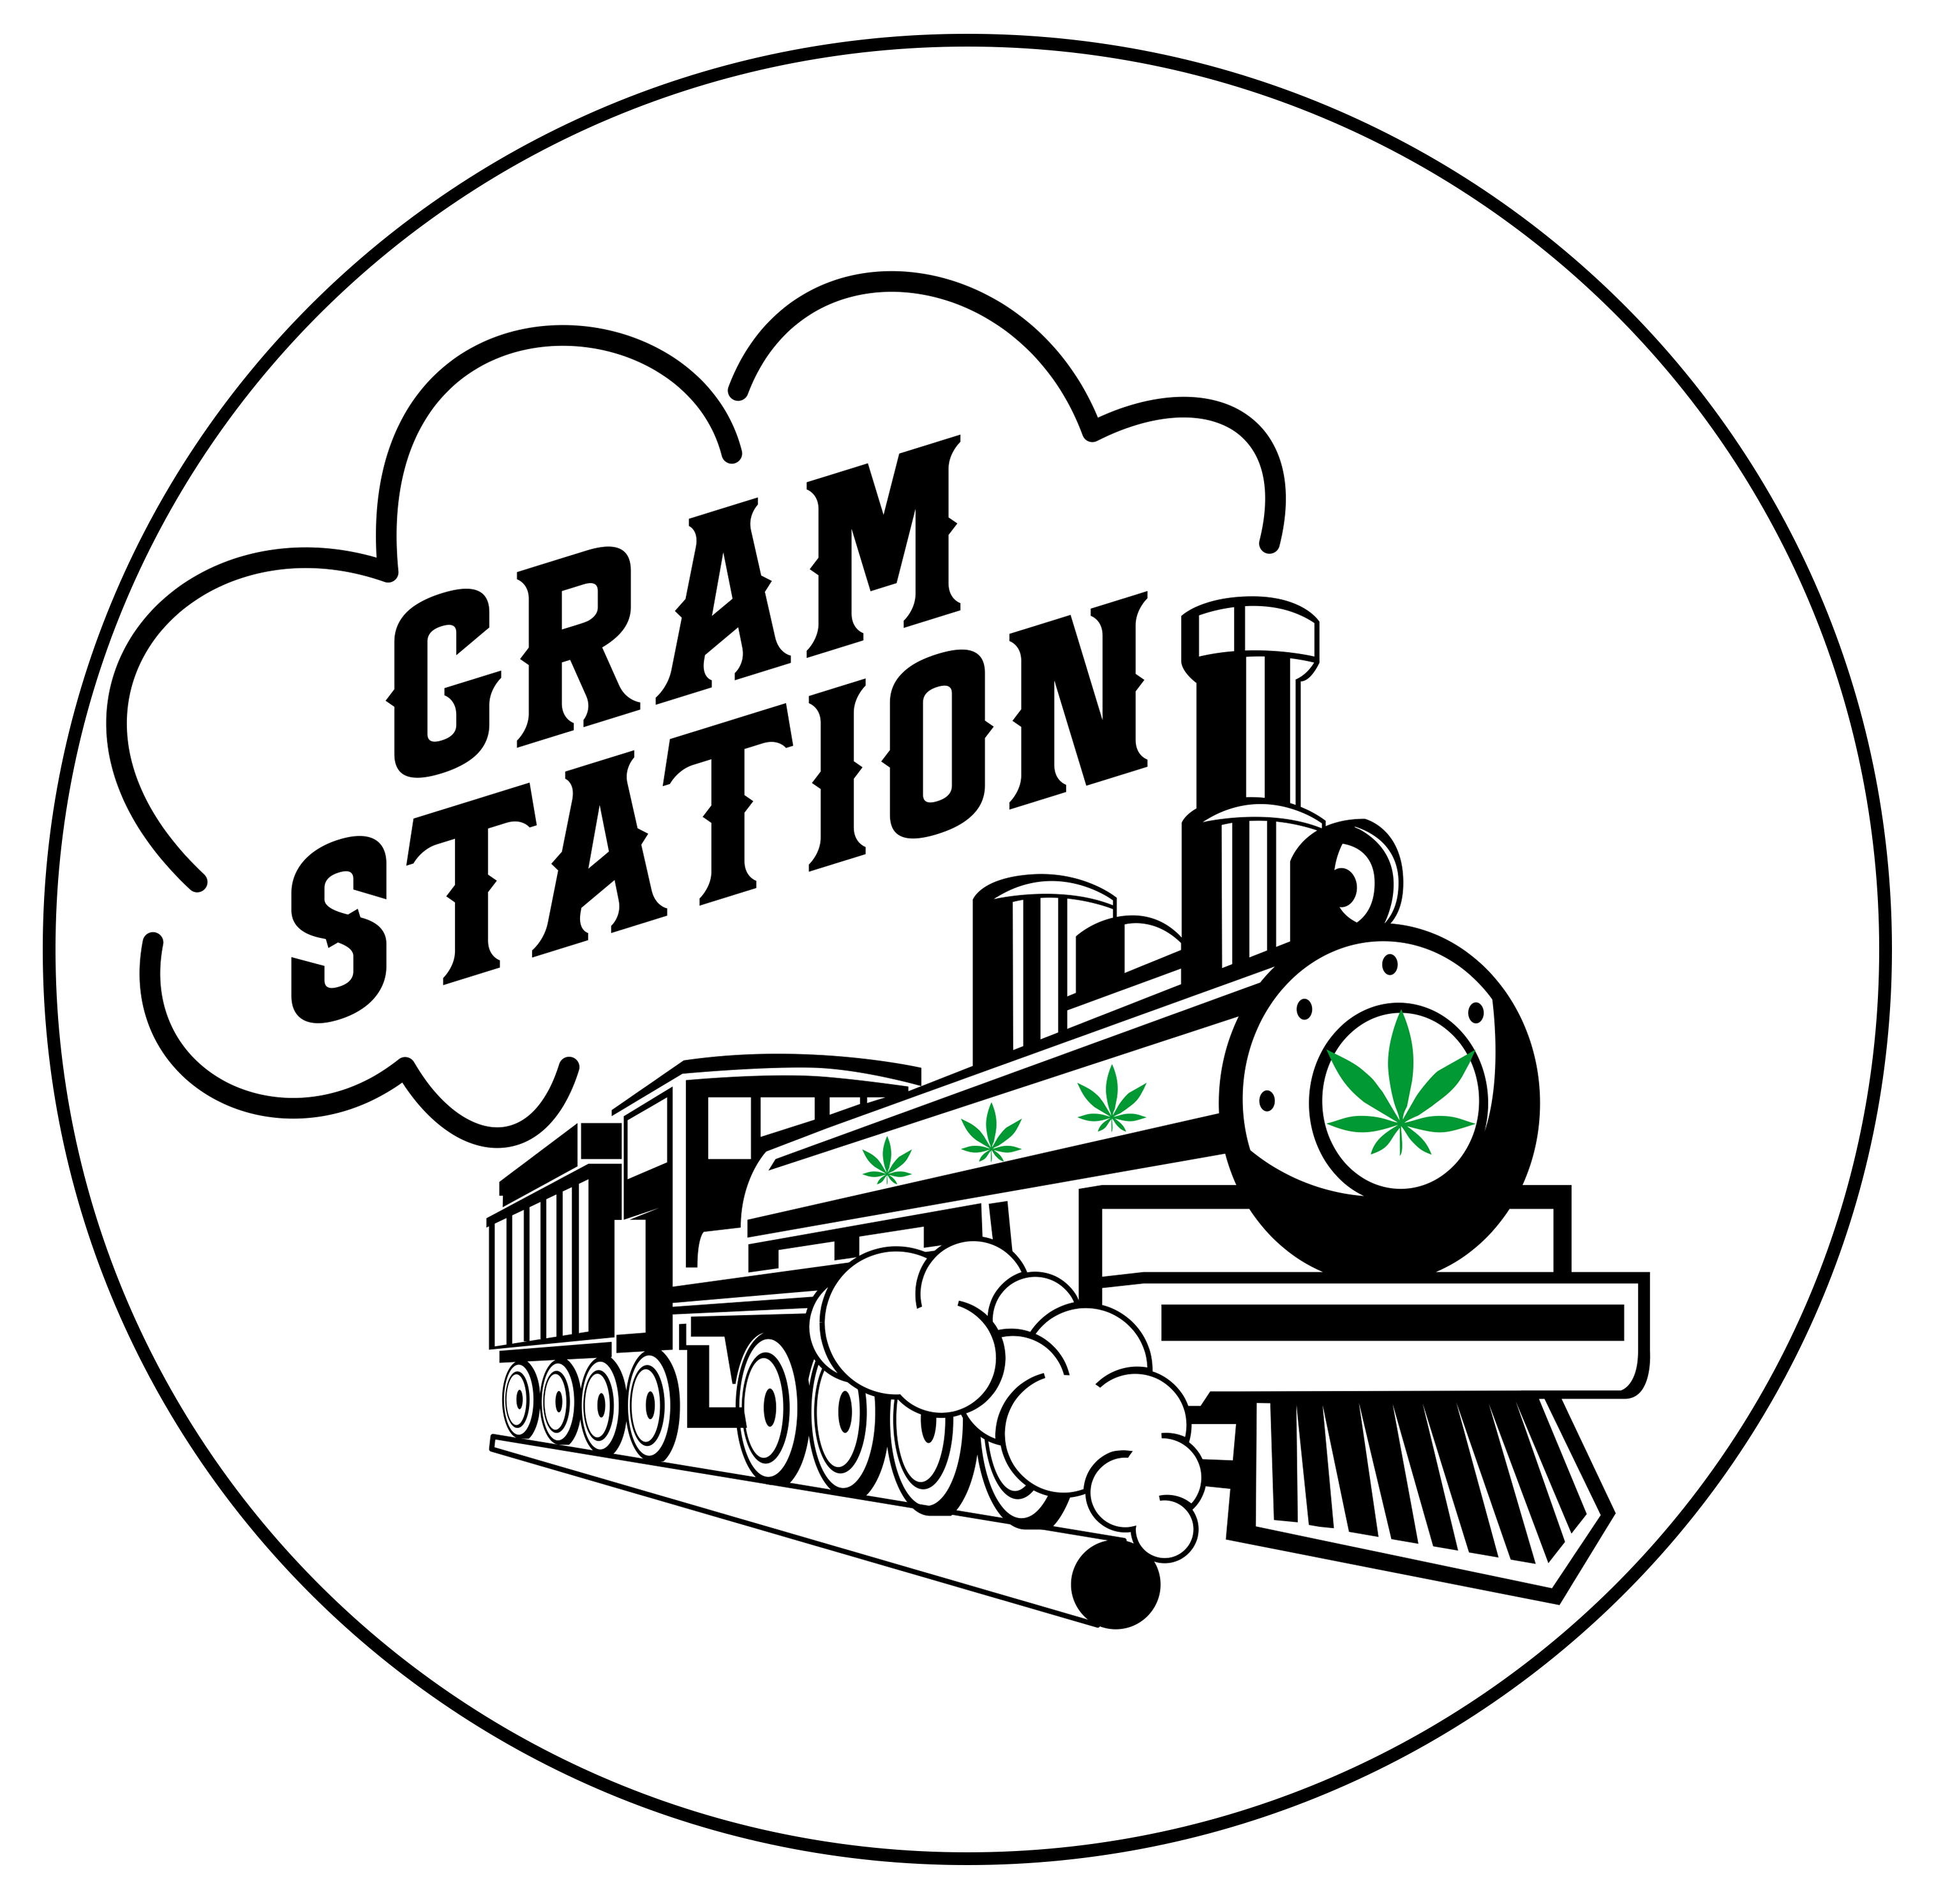 Gram Station